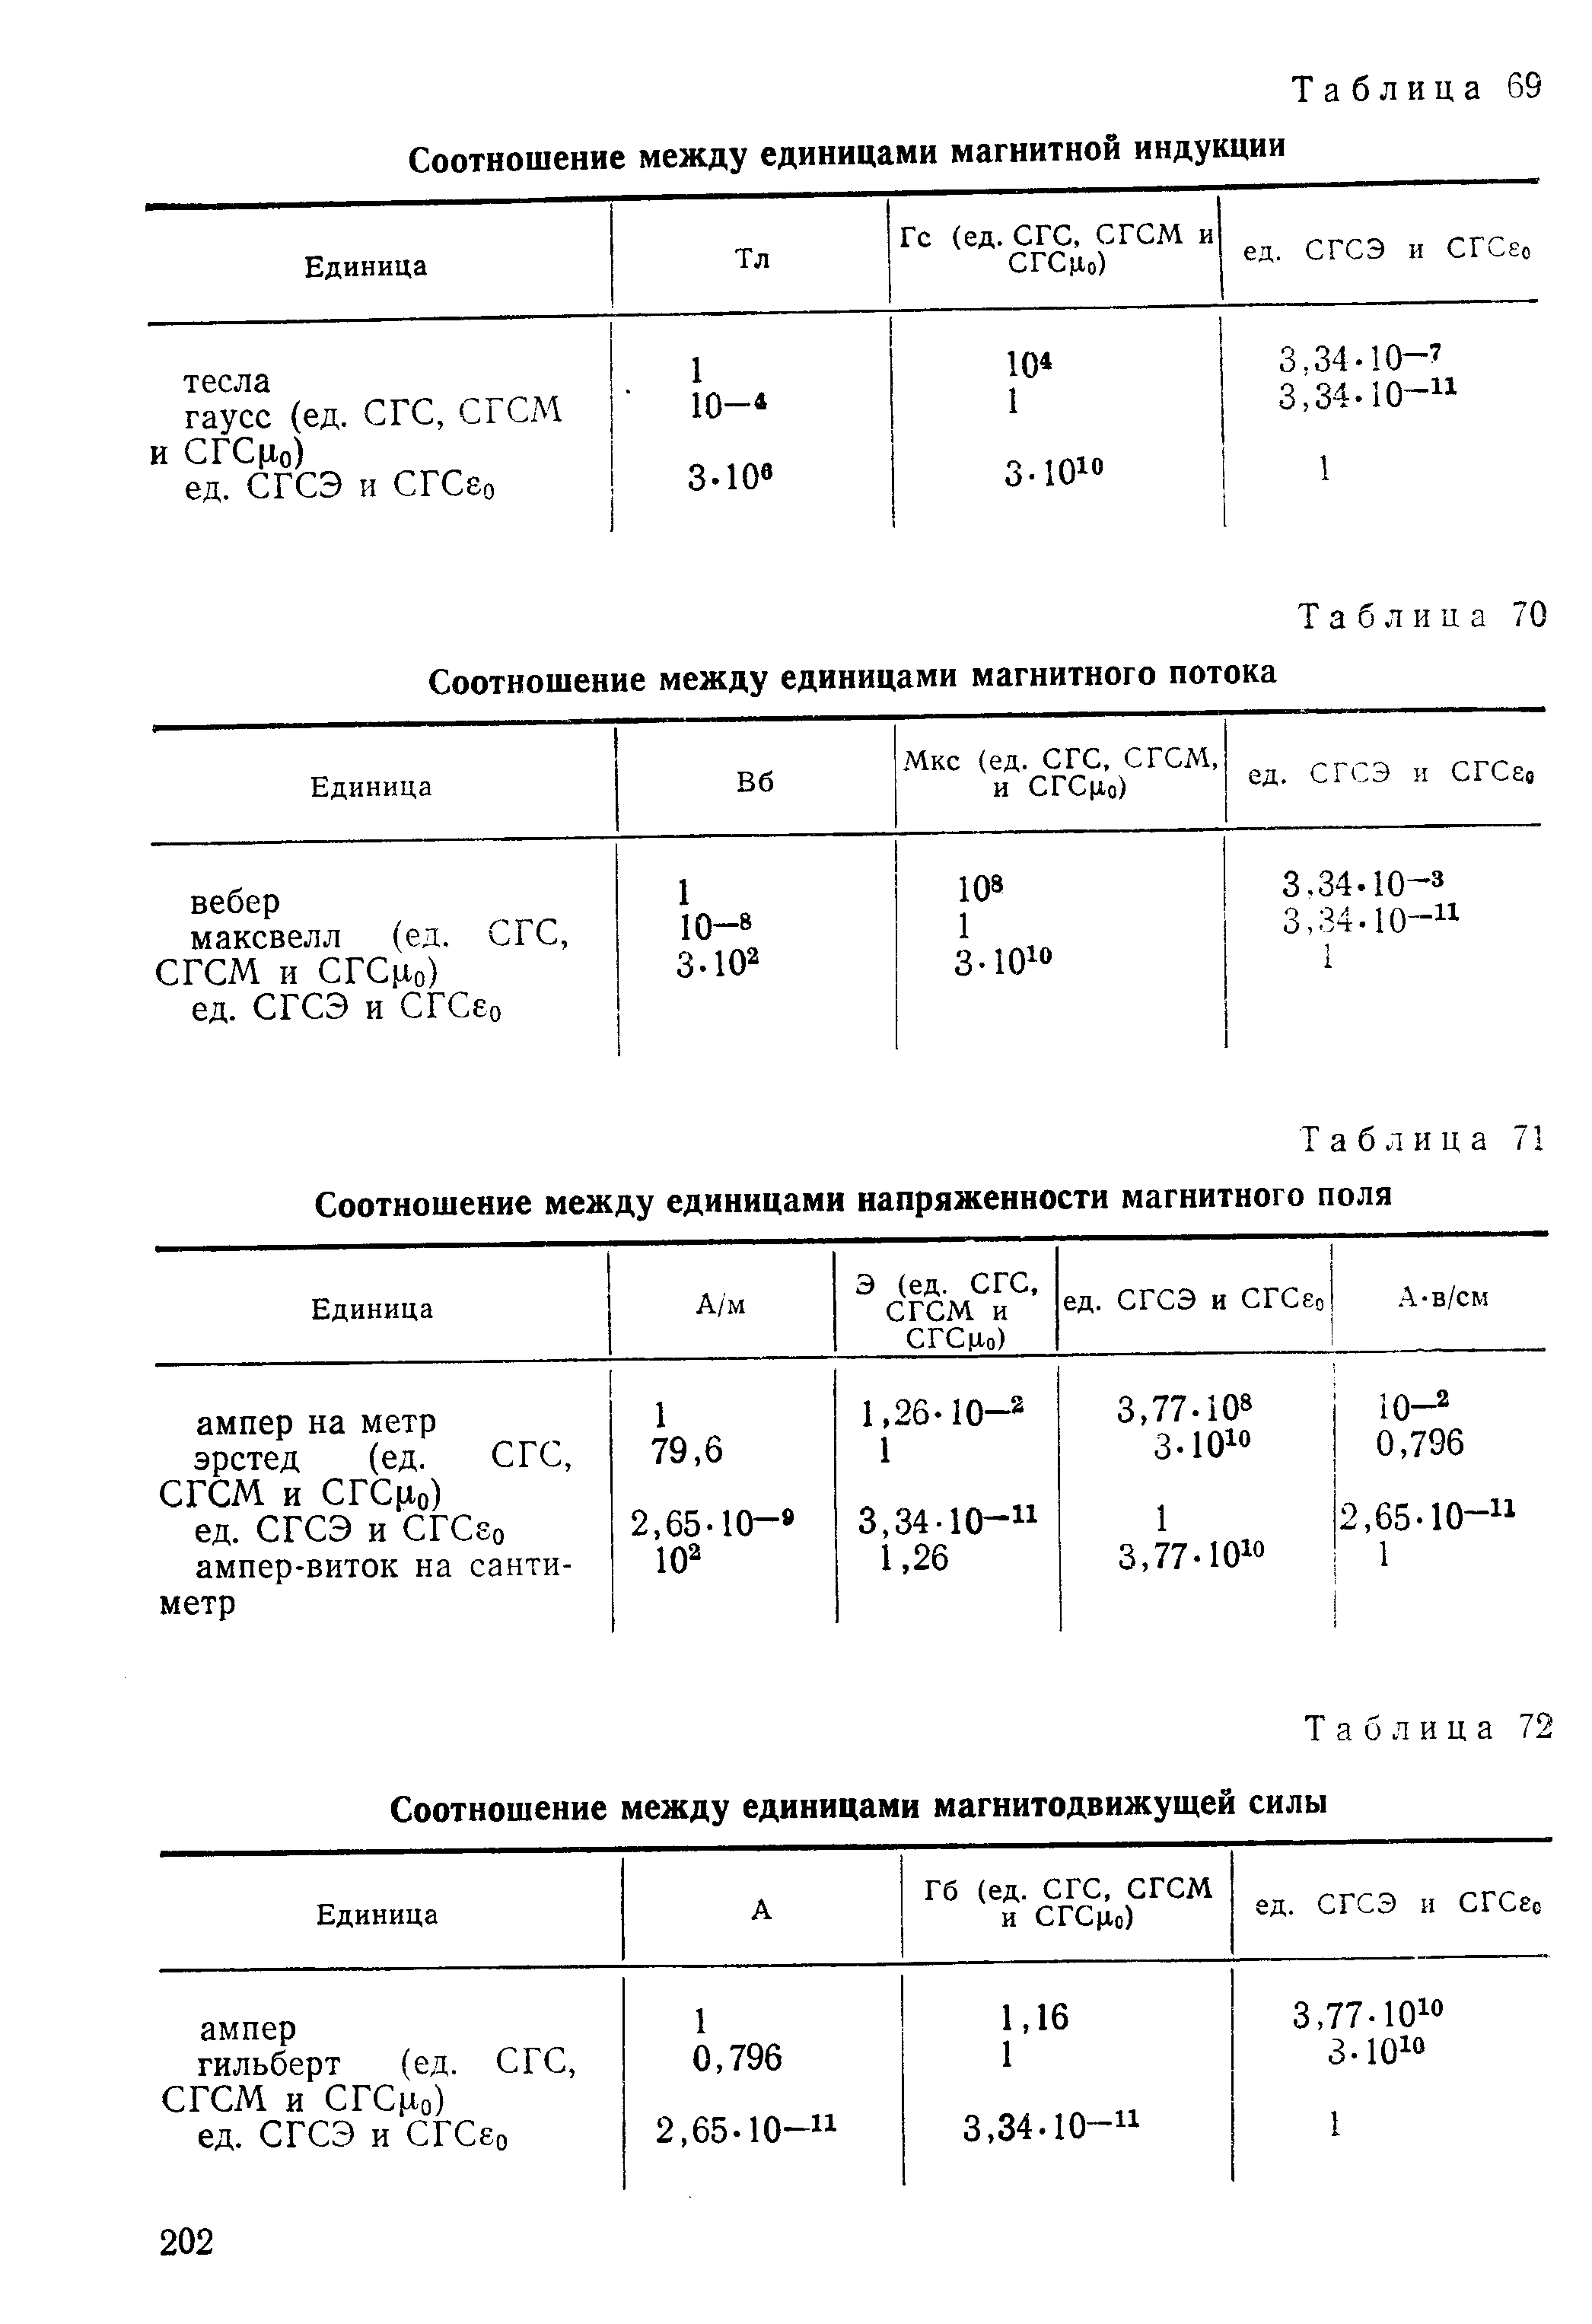 Таблица 72 Соотношение между единицами магнитодвижущей силы
